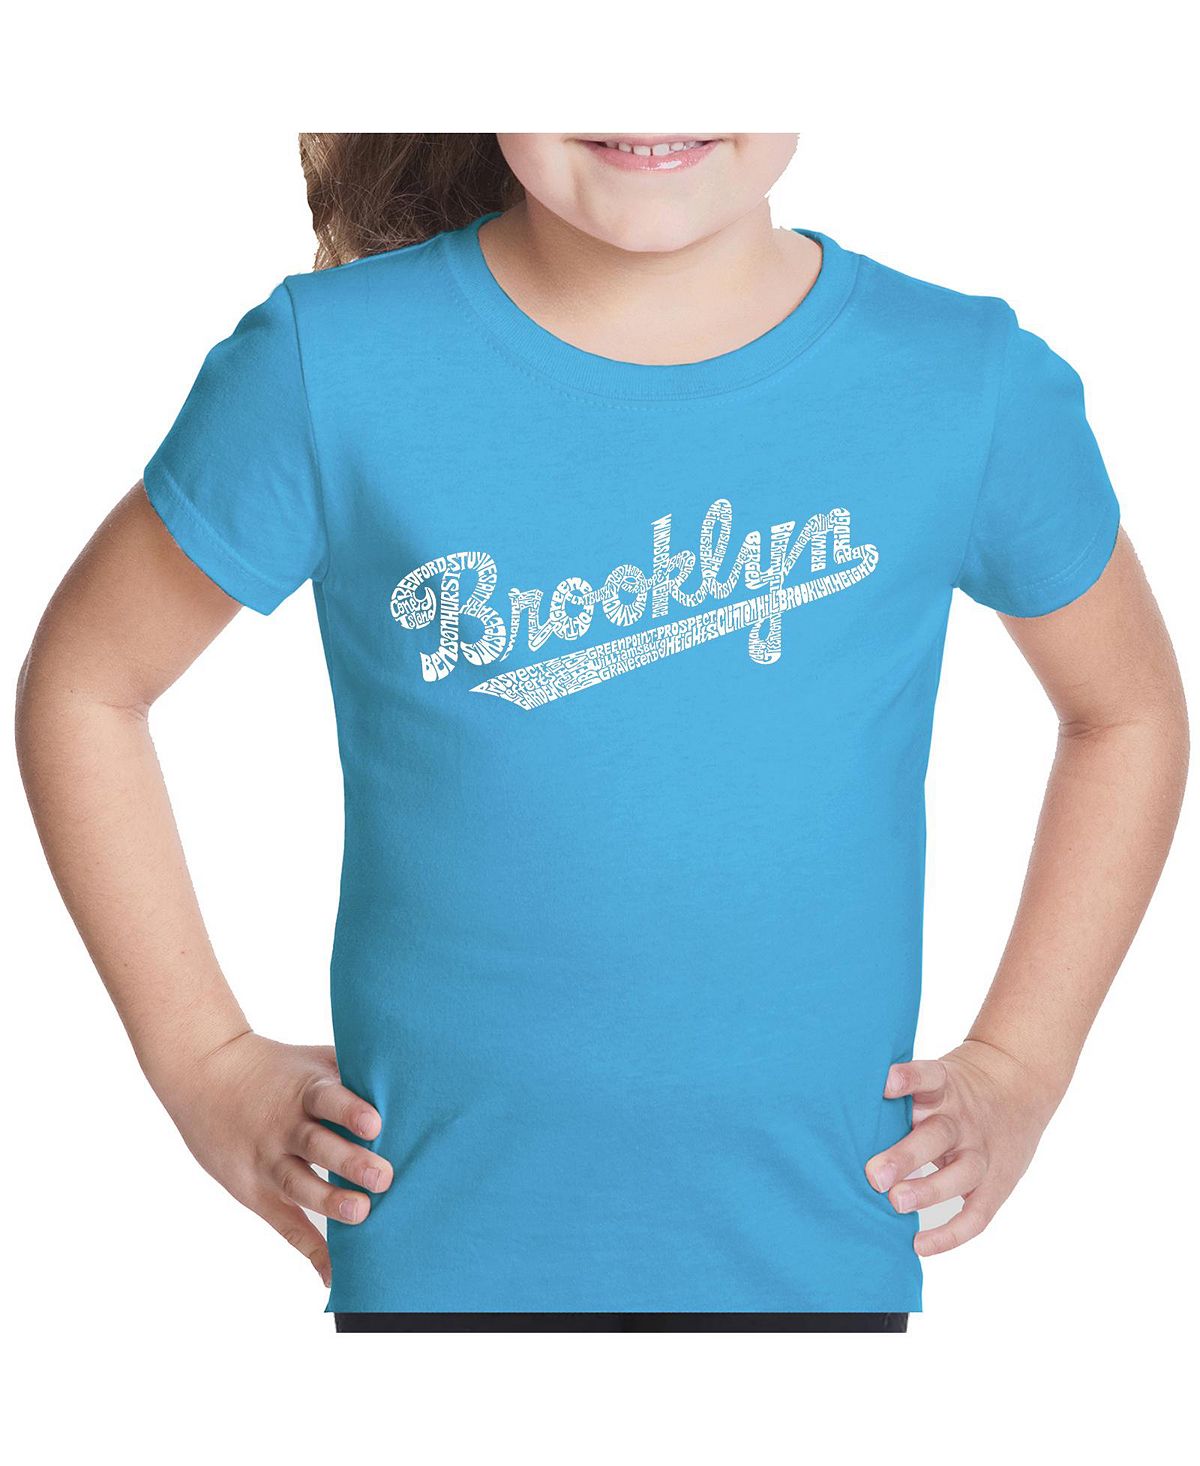 Футболка с надписью Big Girl's Word Art — Brooklyn Neighborhoods LA Pop Art brooklyn neighborhoods мужская футболка с длинным рукавом с надписью word art la pop art